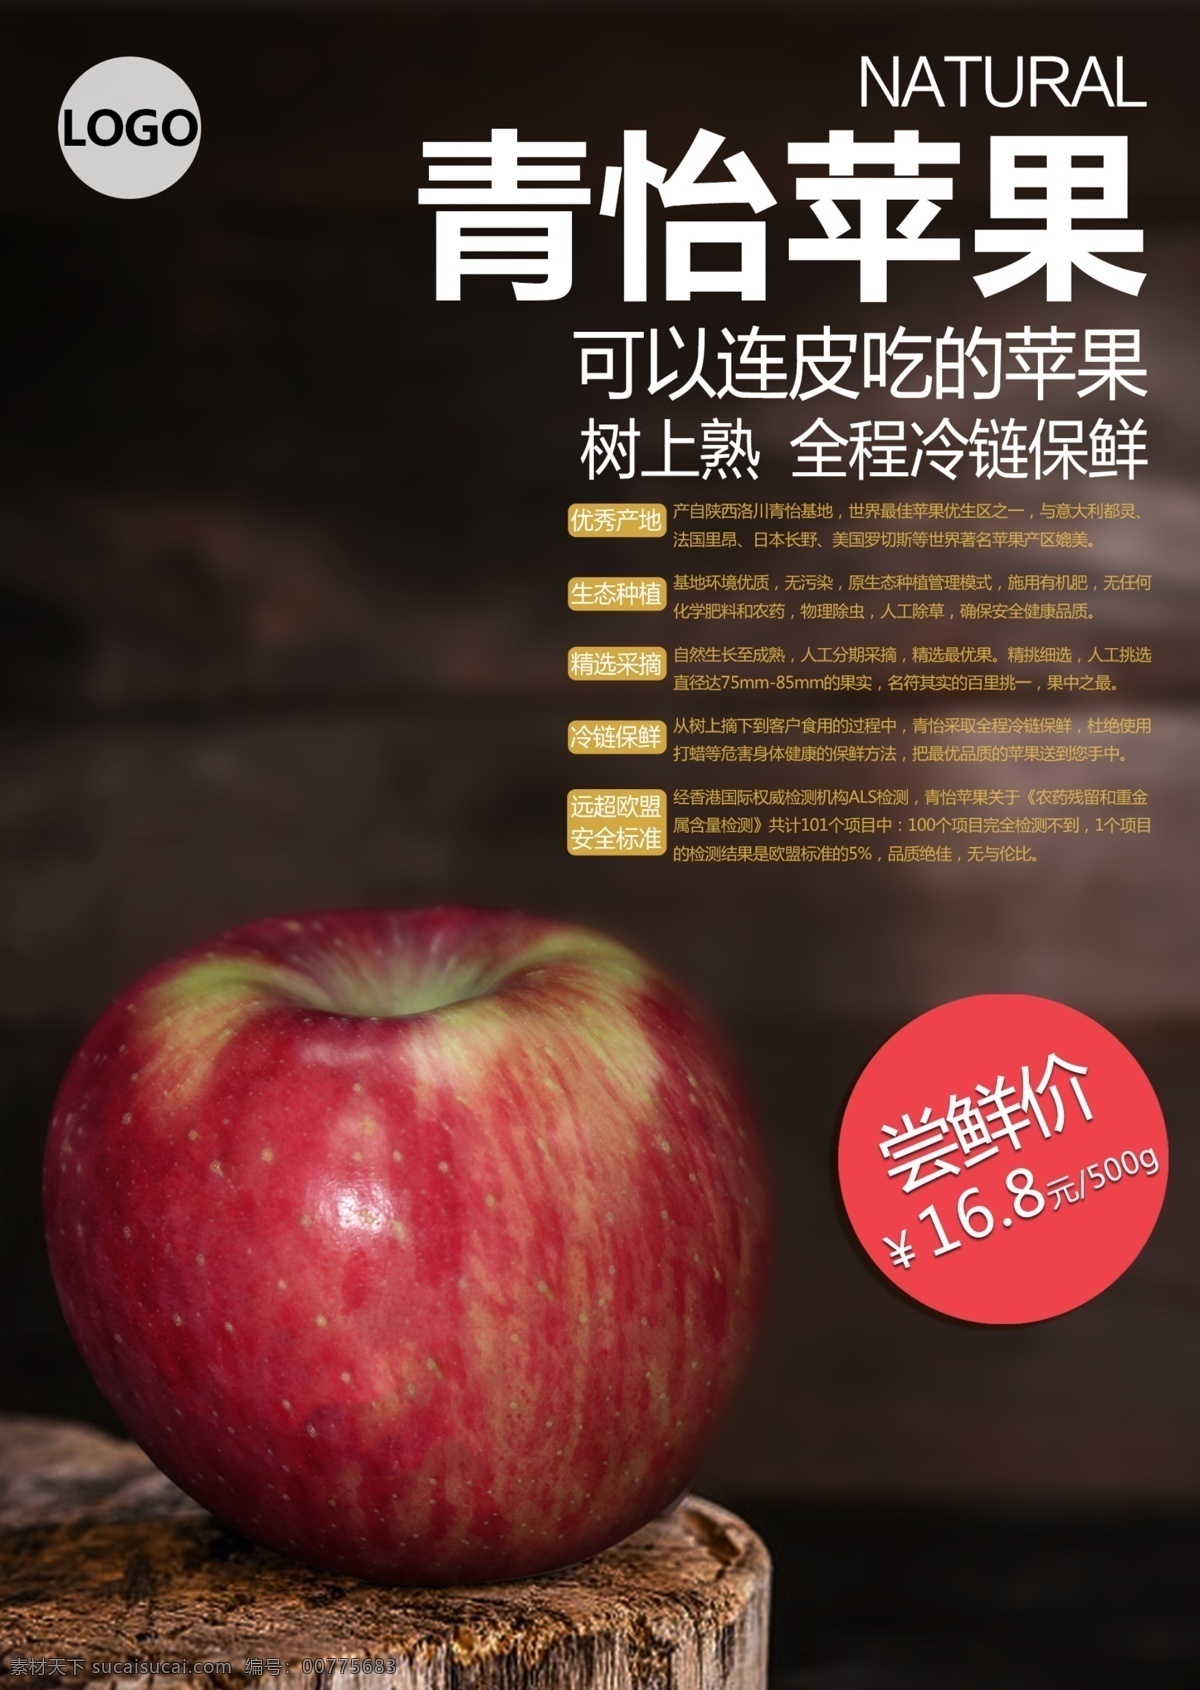 苹果 美食 海报 促销 促销海报 大气 黑色 美食促销 美食海报 时尚 水果 展板